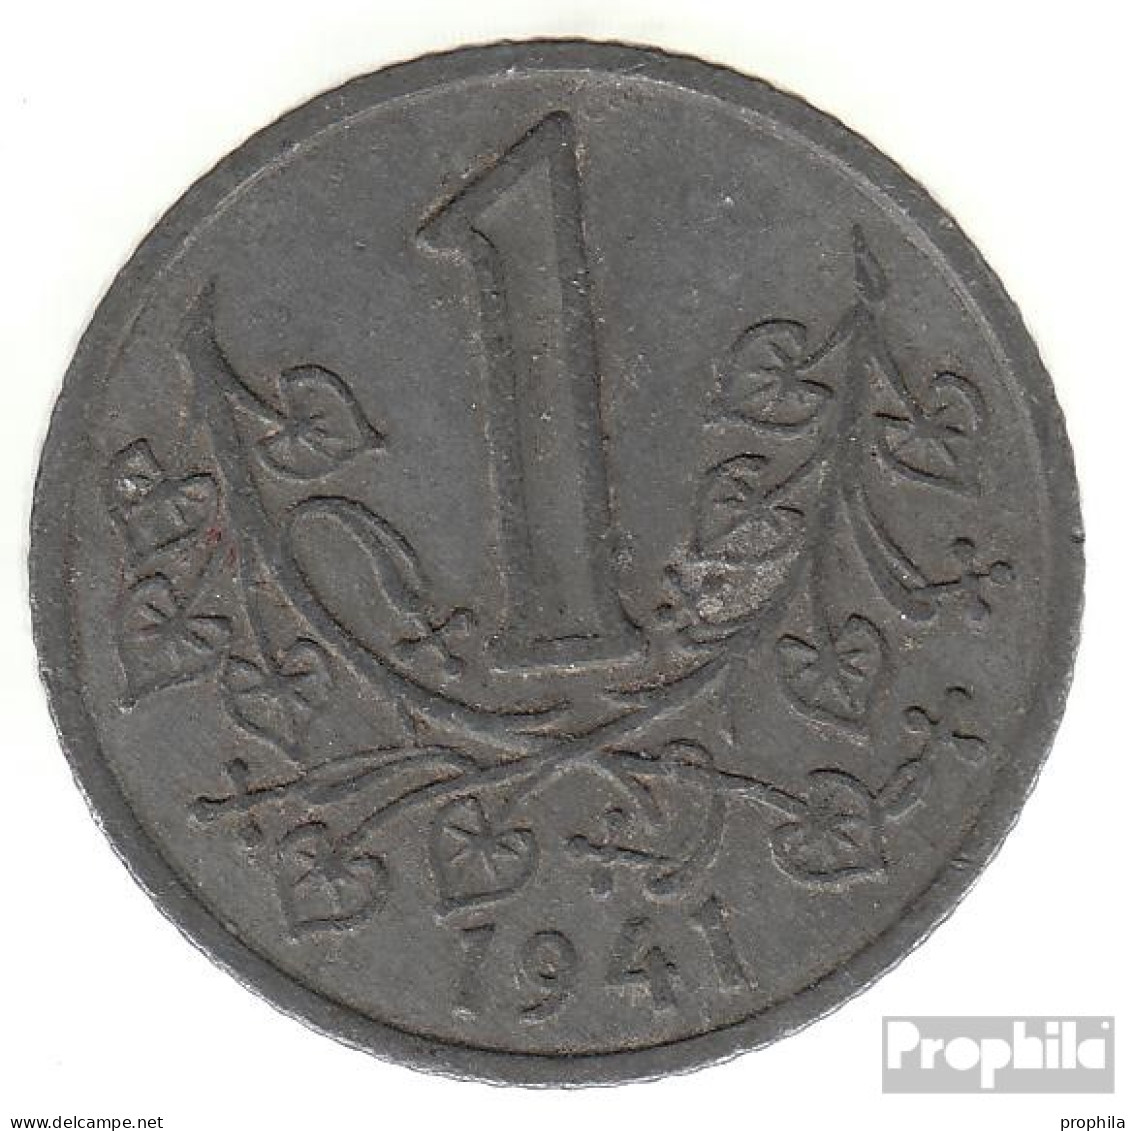 Böhmen Und Mähren Jägernr: 623 1942 Sehr Schön Zink Sehr Schön 1942 1 Krone Wappenlöwe - Military Coin Minting - WWII